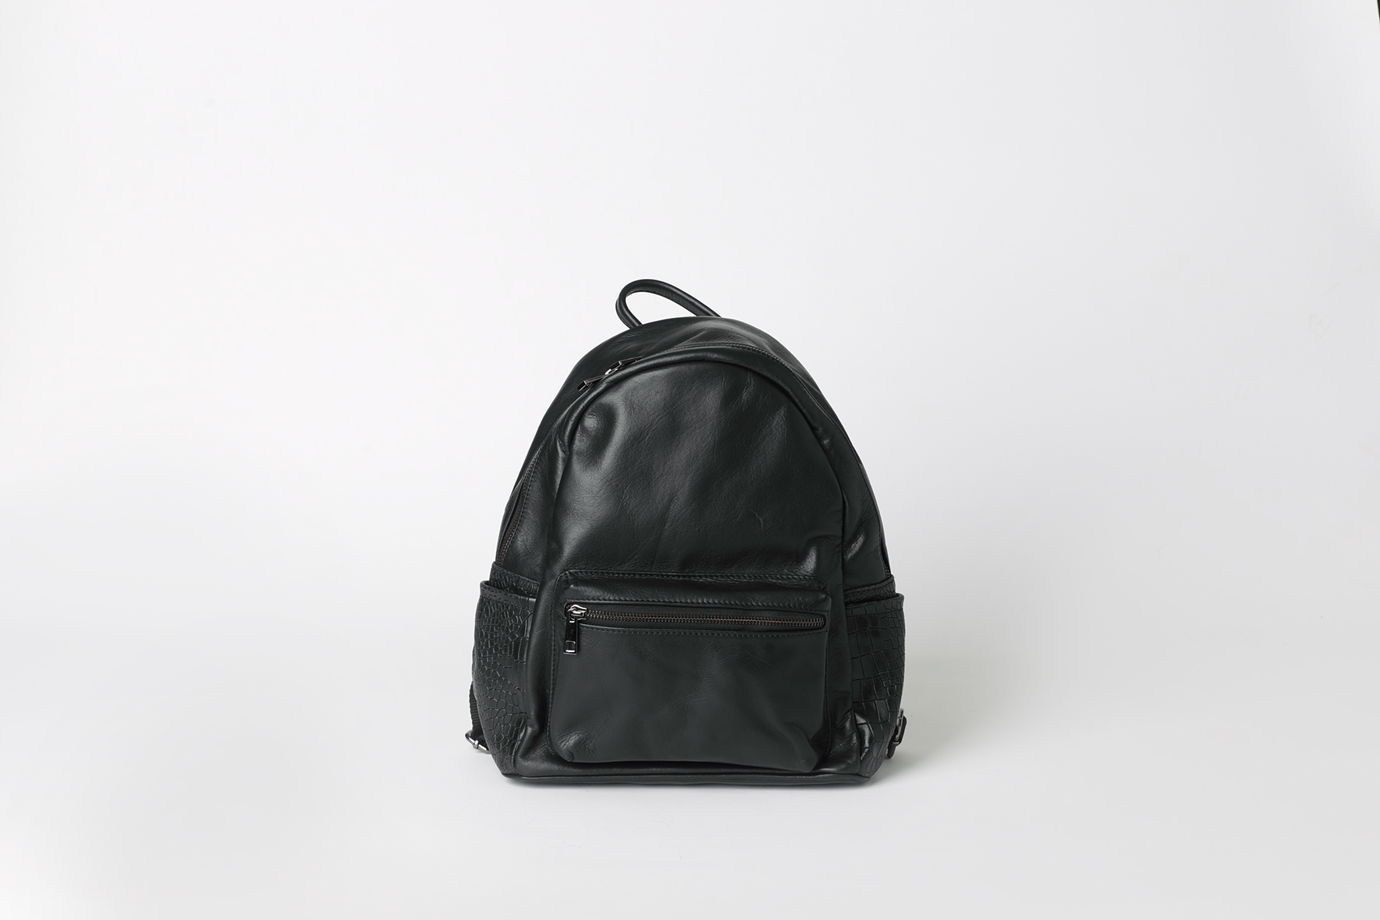 Черный кожаный рюкзак на подкладке - LACERTA - real leather backpack. В наличии в Москве